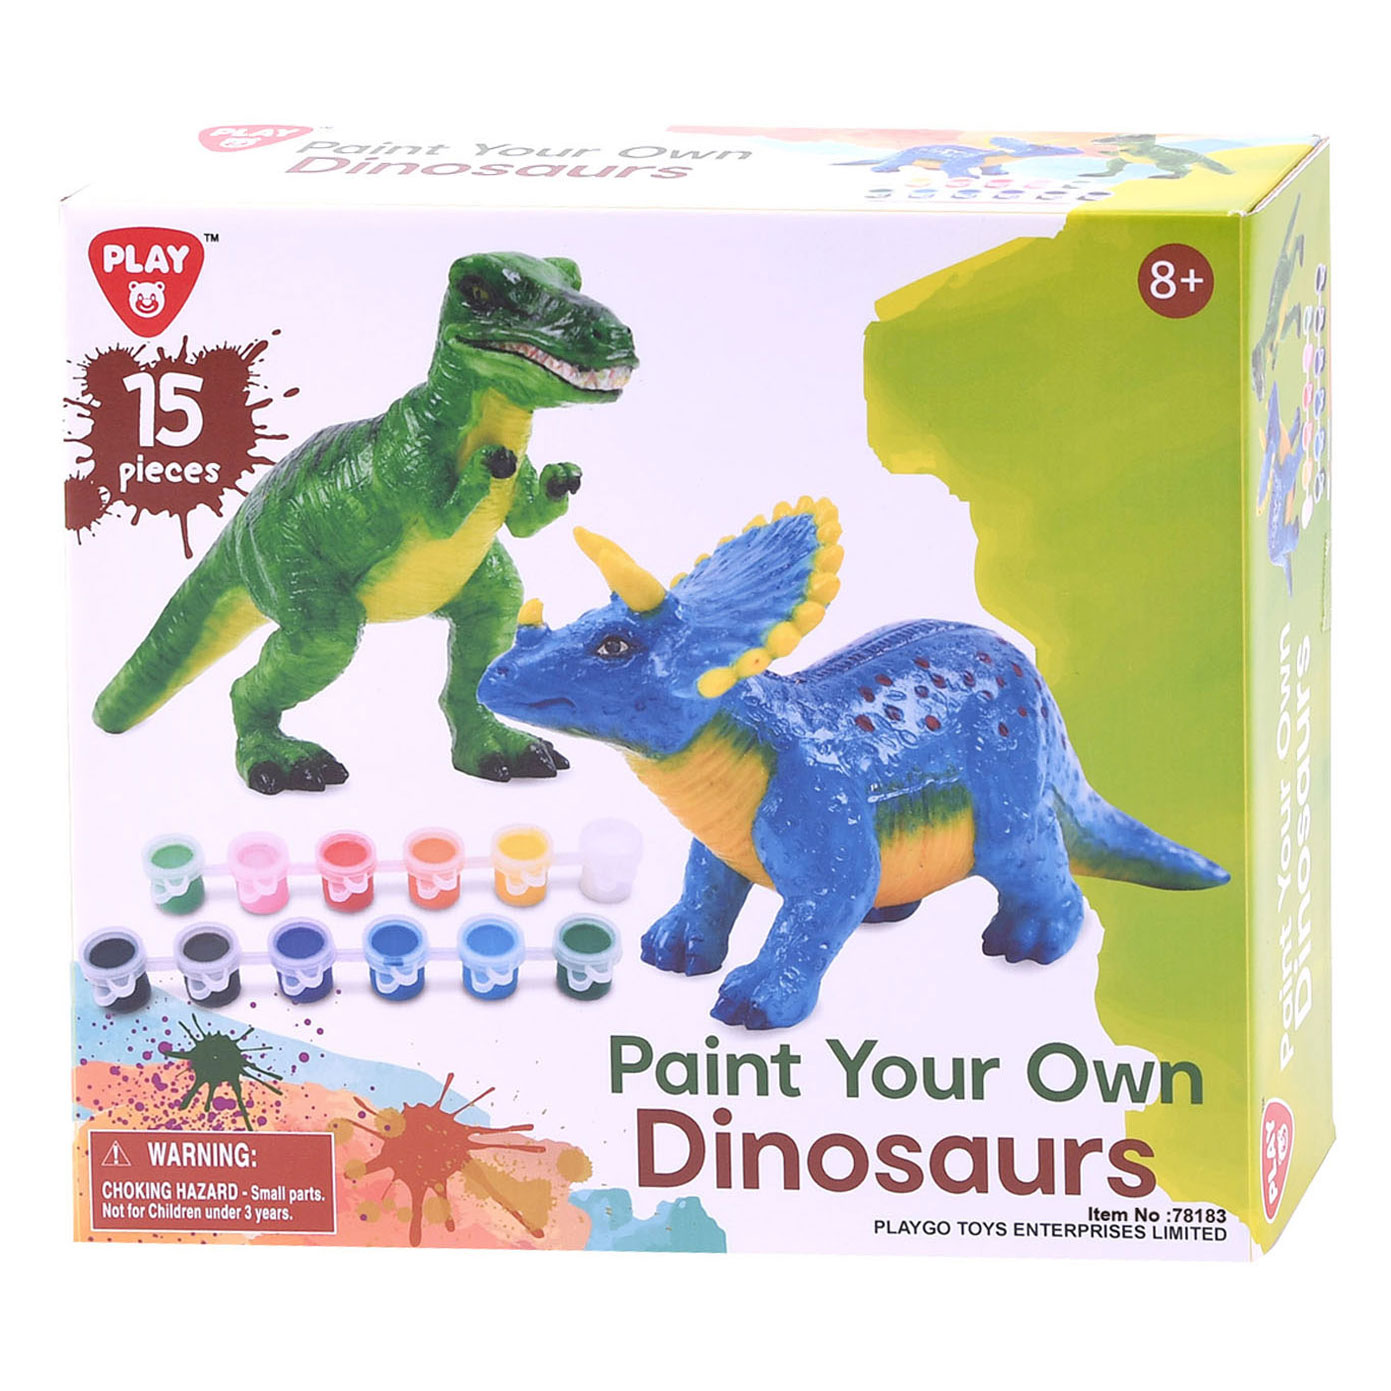 Play à Peignez vos propres dinosaures, 15 pcs.